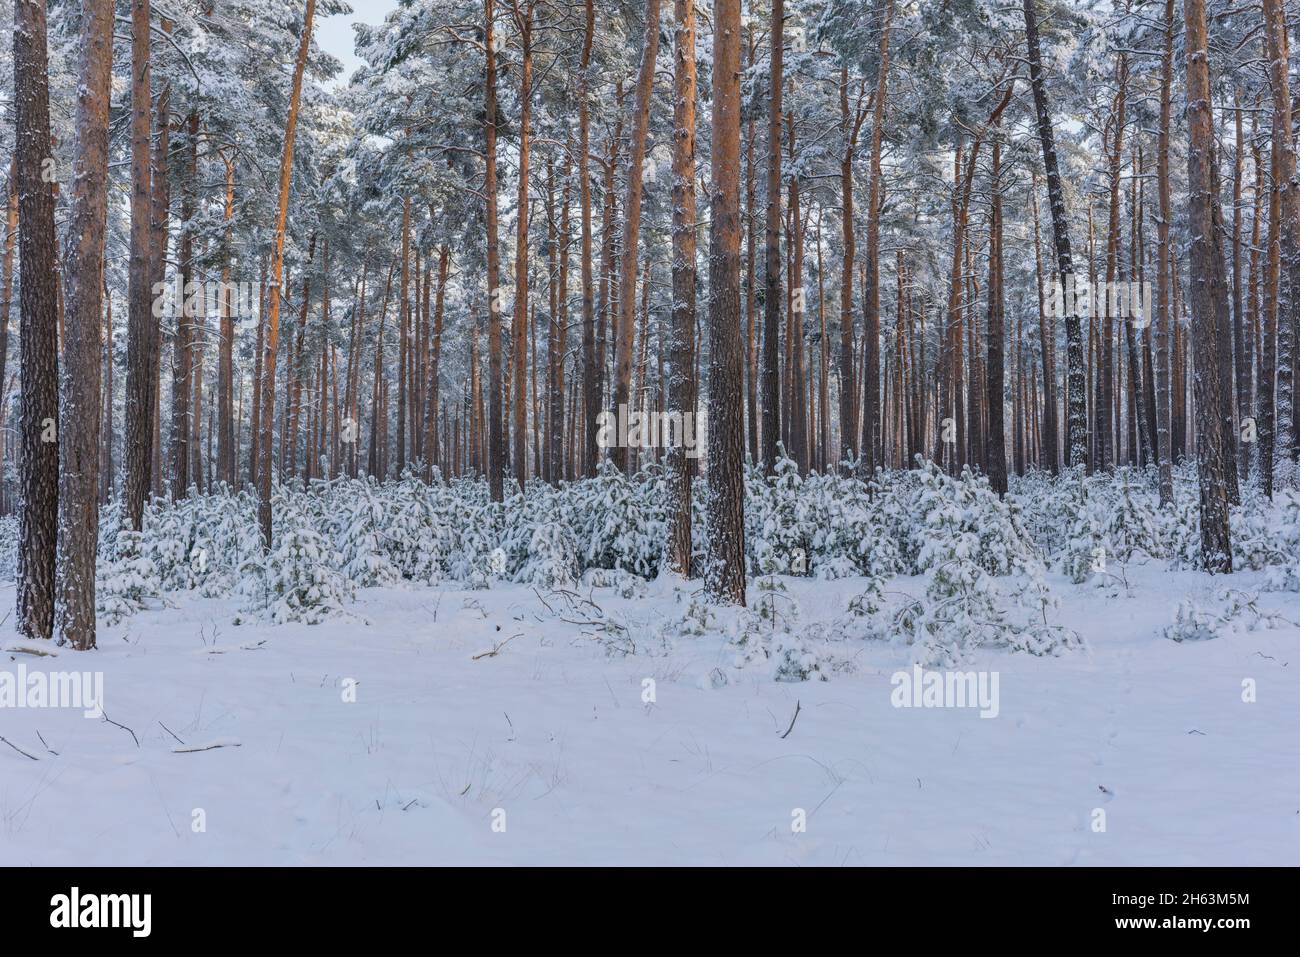 pineta in inverno con un sacco di neve, pini giovani e vecchi, alberi coperti di neve Foto Stock